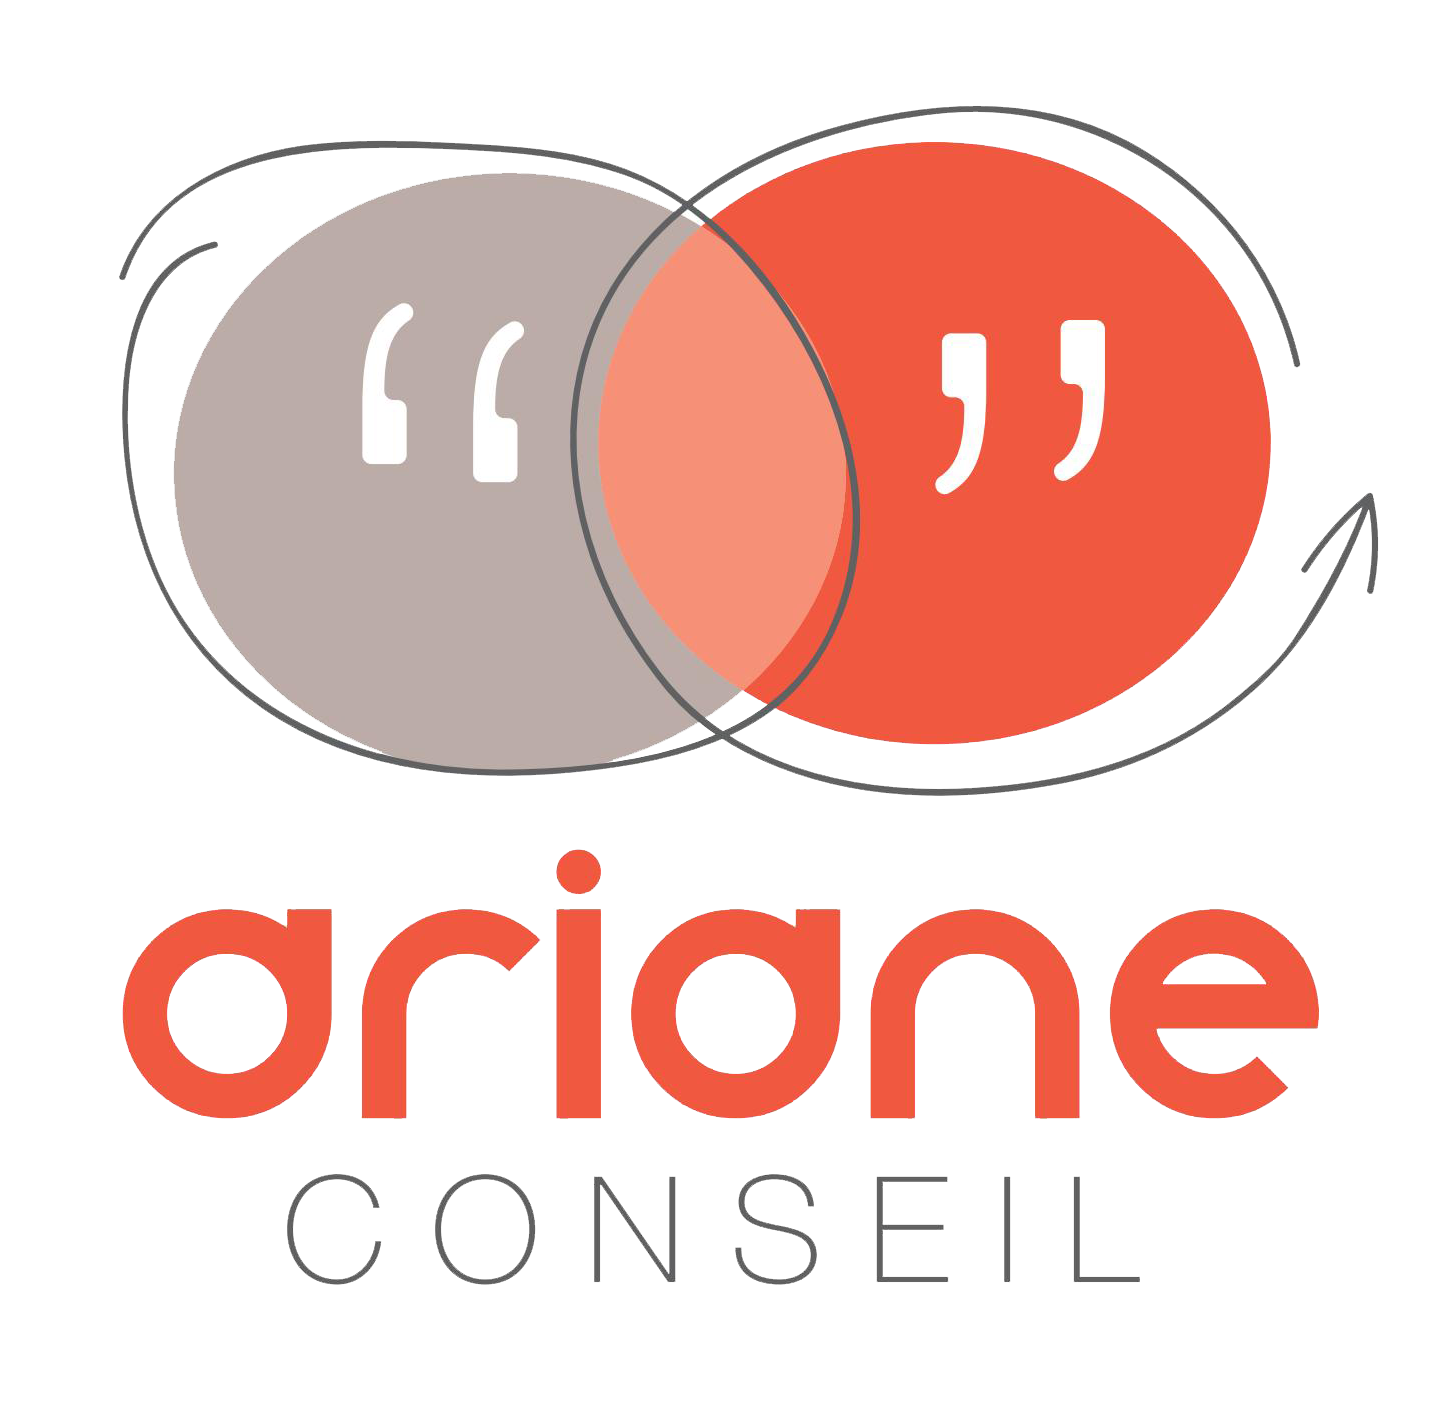 Ariane Conseil